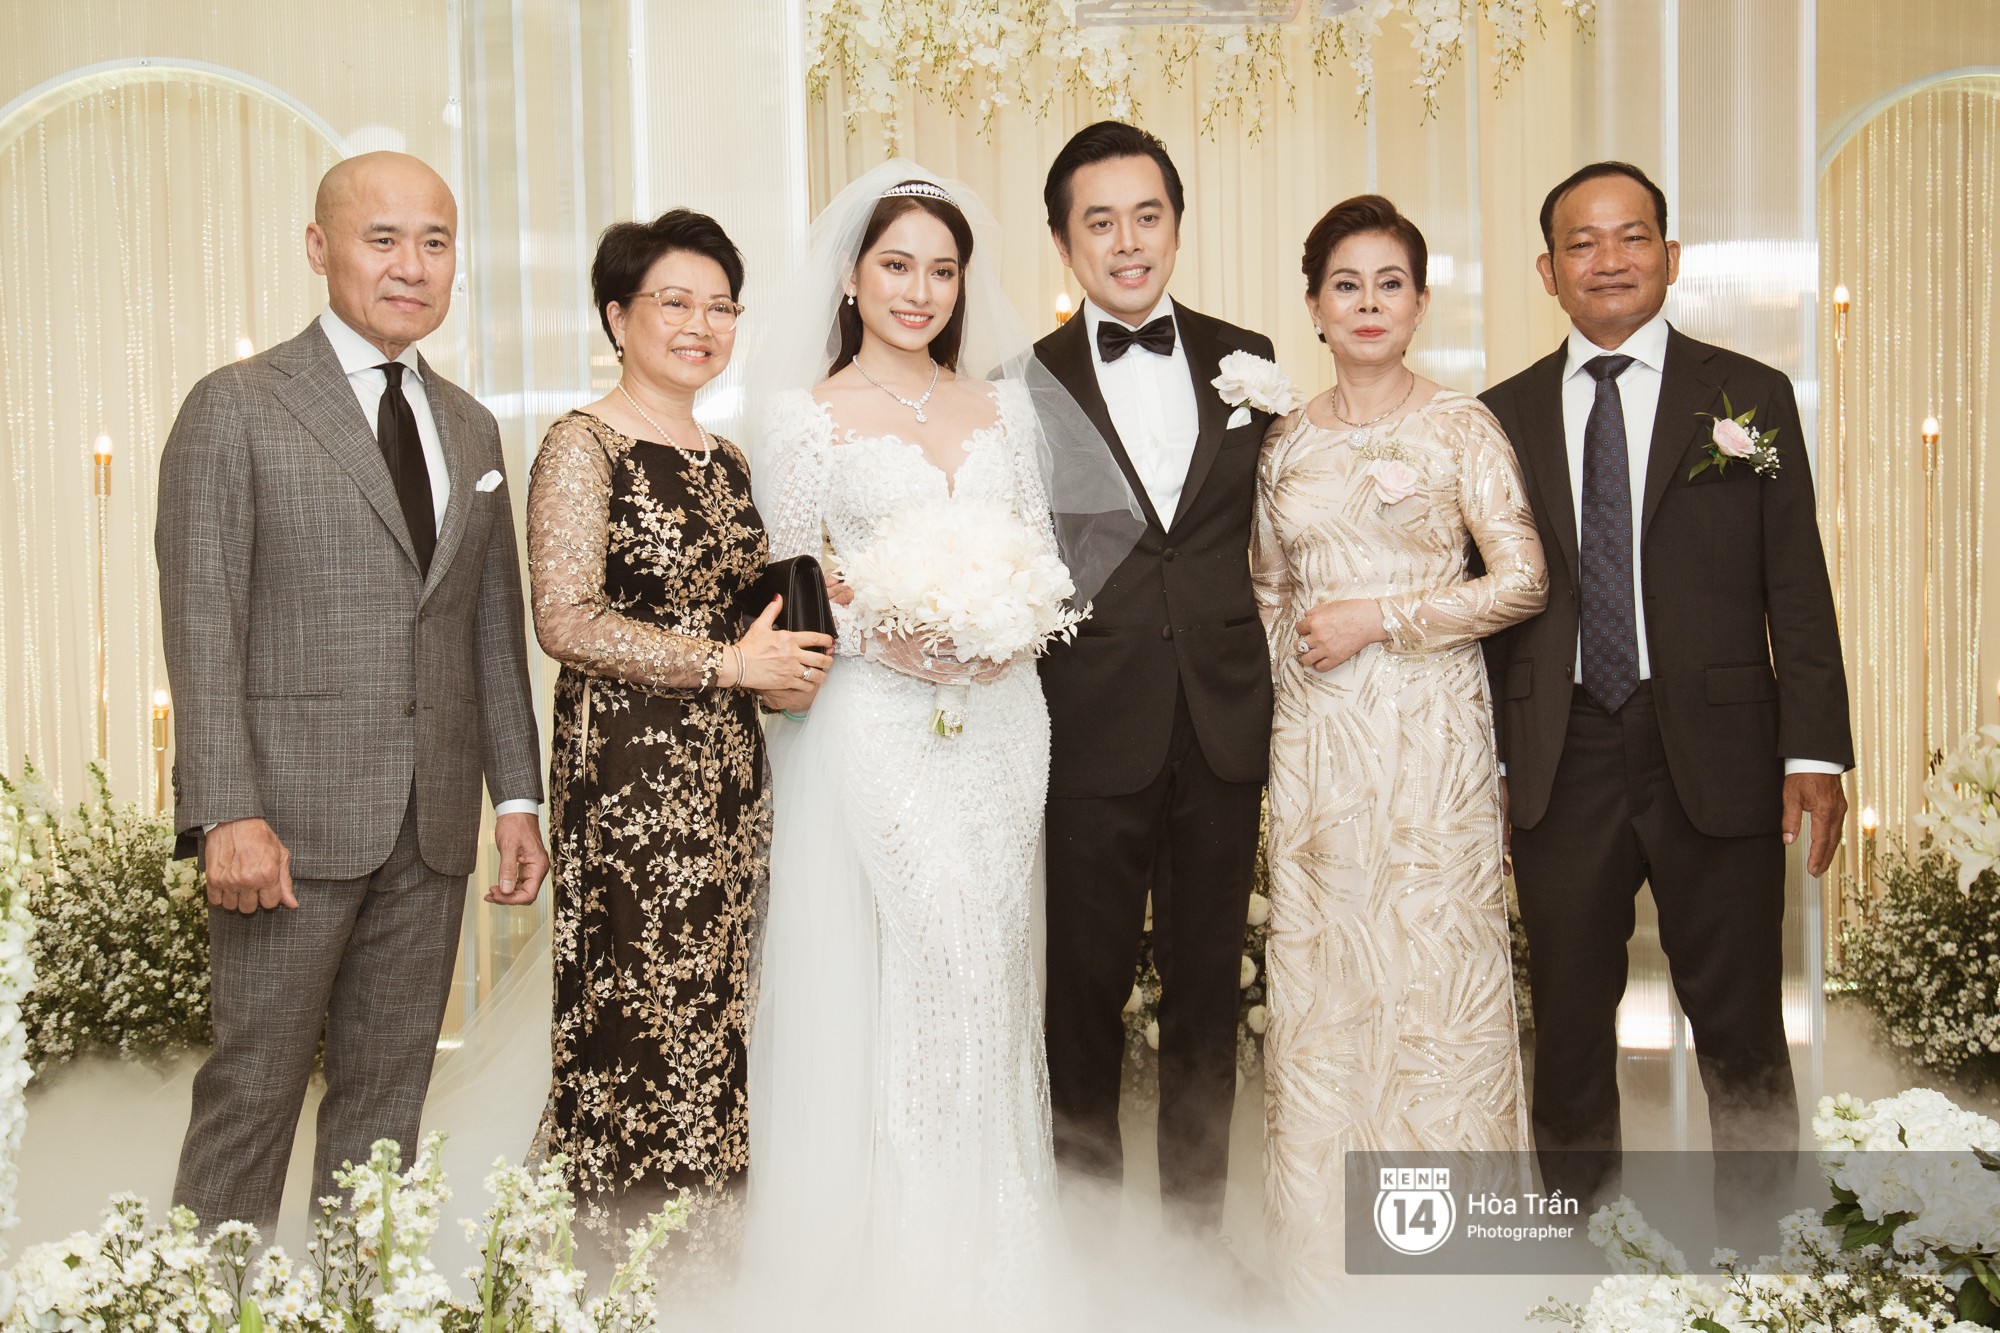 Noo Phước Thịnh, Trấn Thành cùng dàn nghệ sĩ đình đám Vbiz tề tựu tại đám cưới của Dương Khắc Linh - Ngọc Duyên - Ảnh 2.